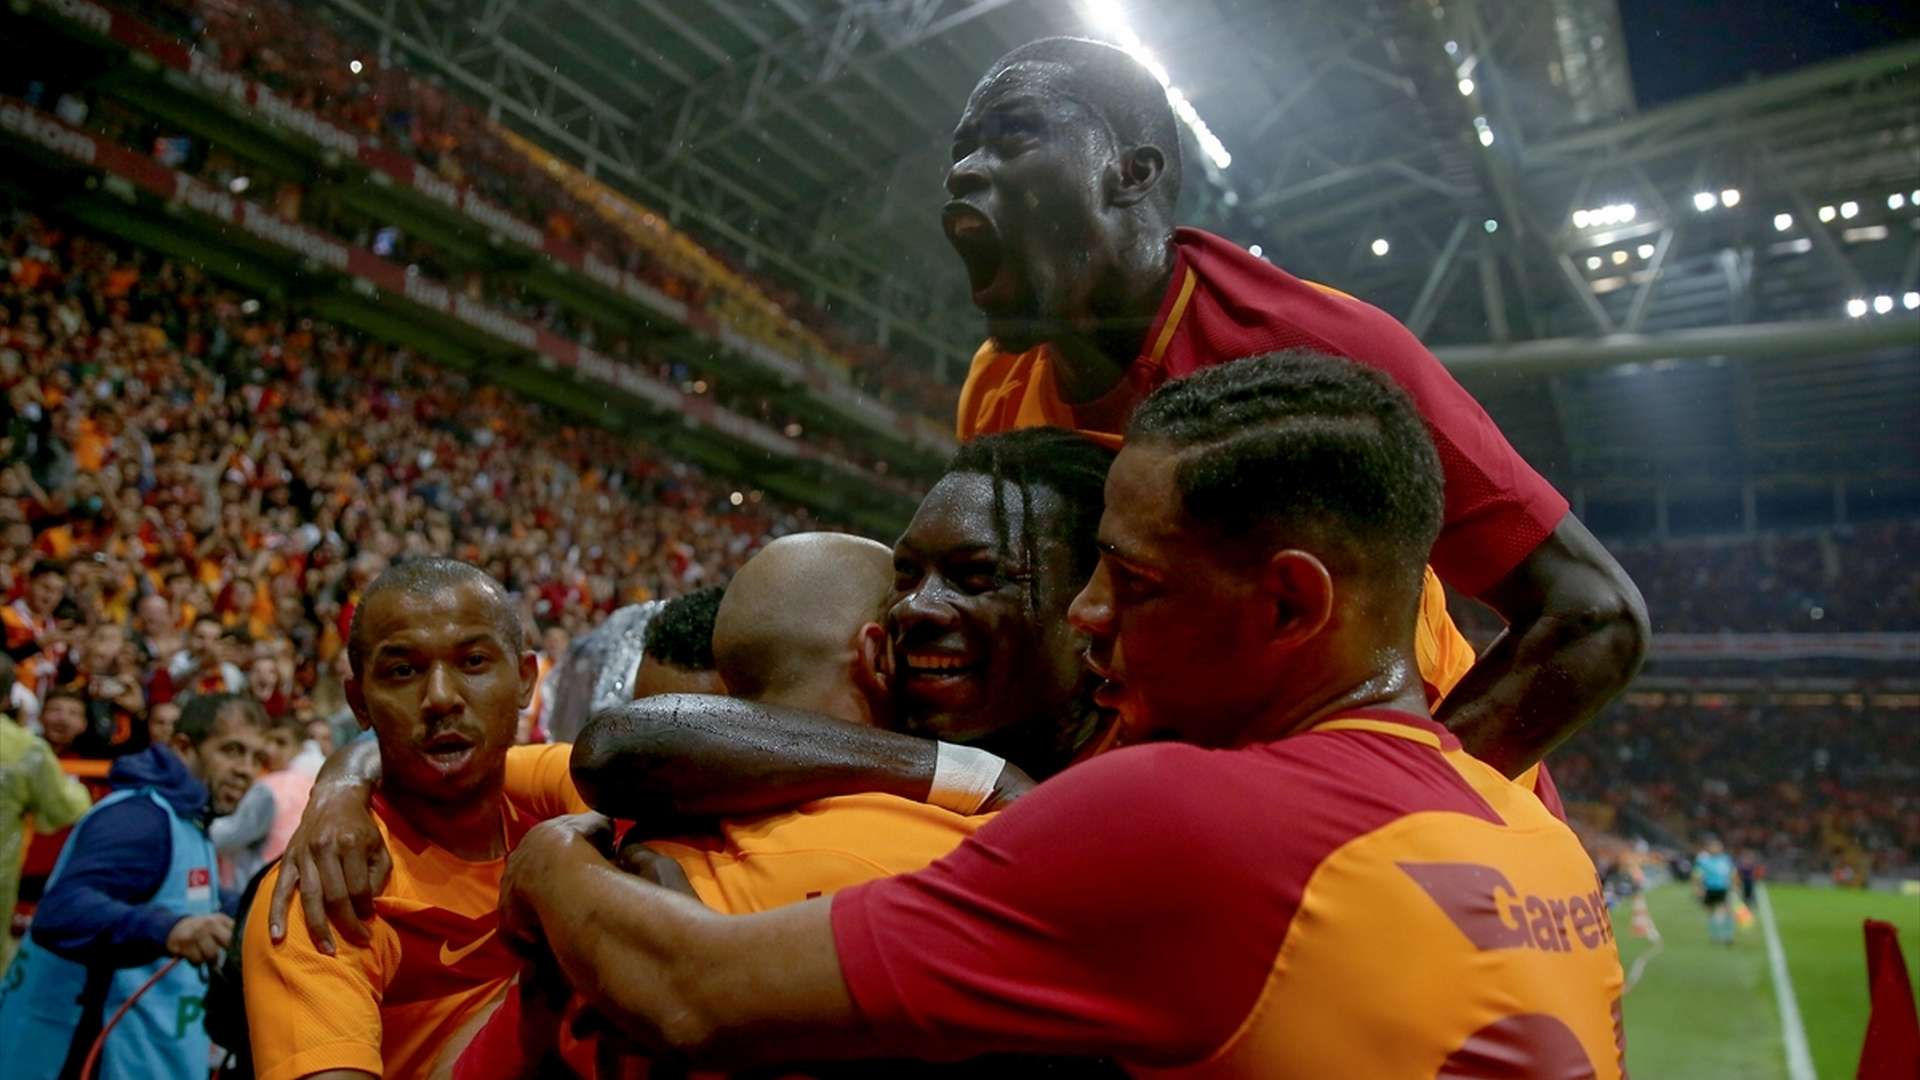 Galatasaray goal celebration 9302017